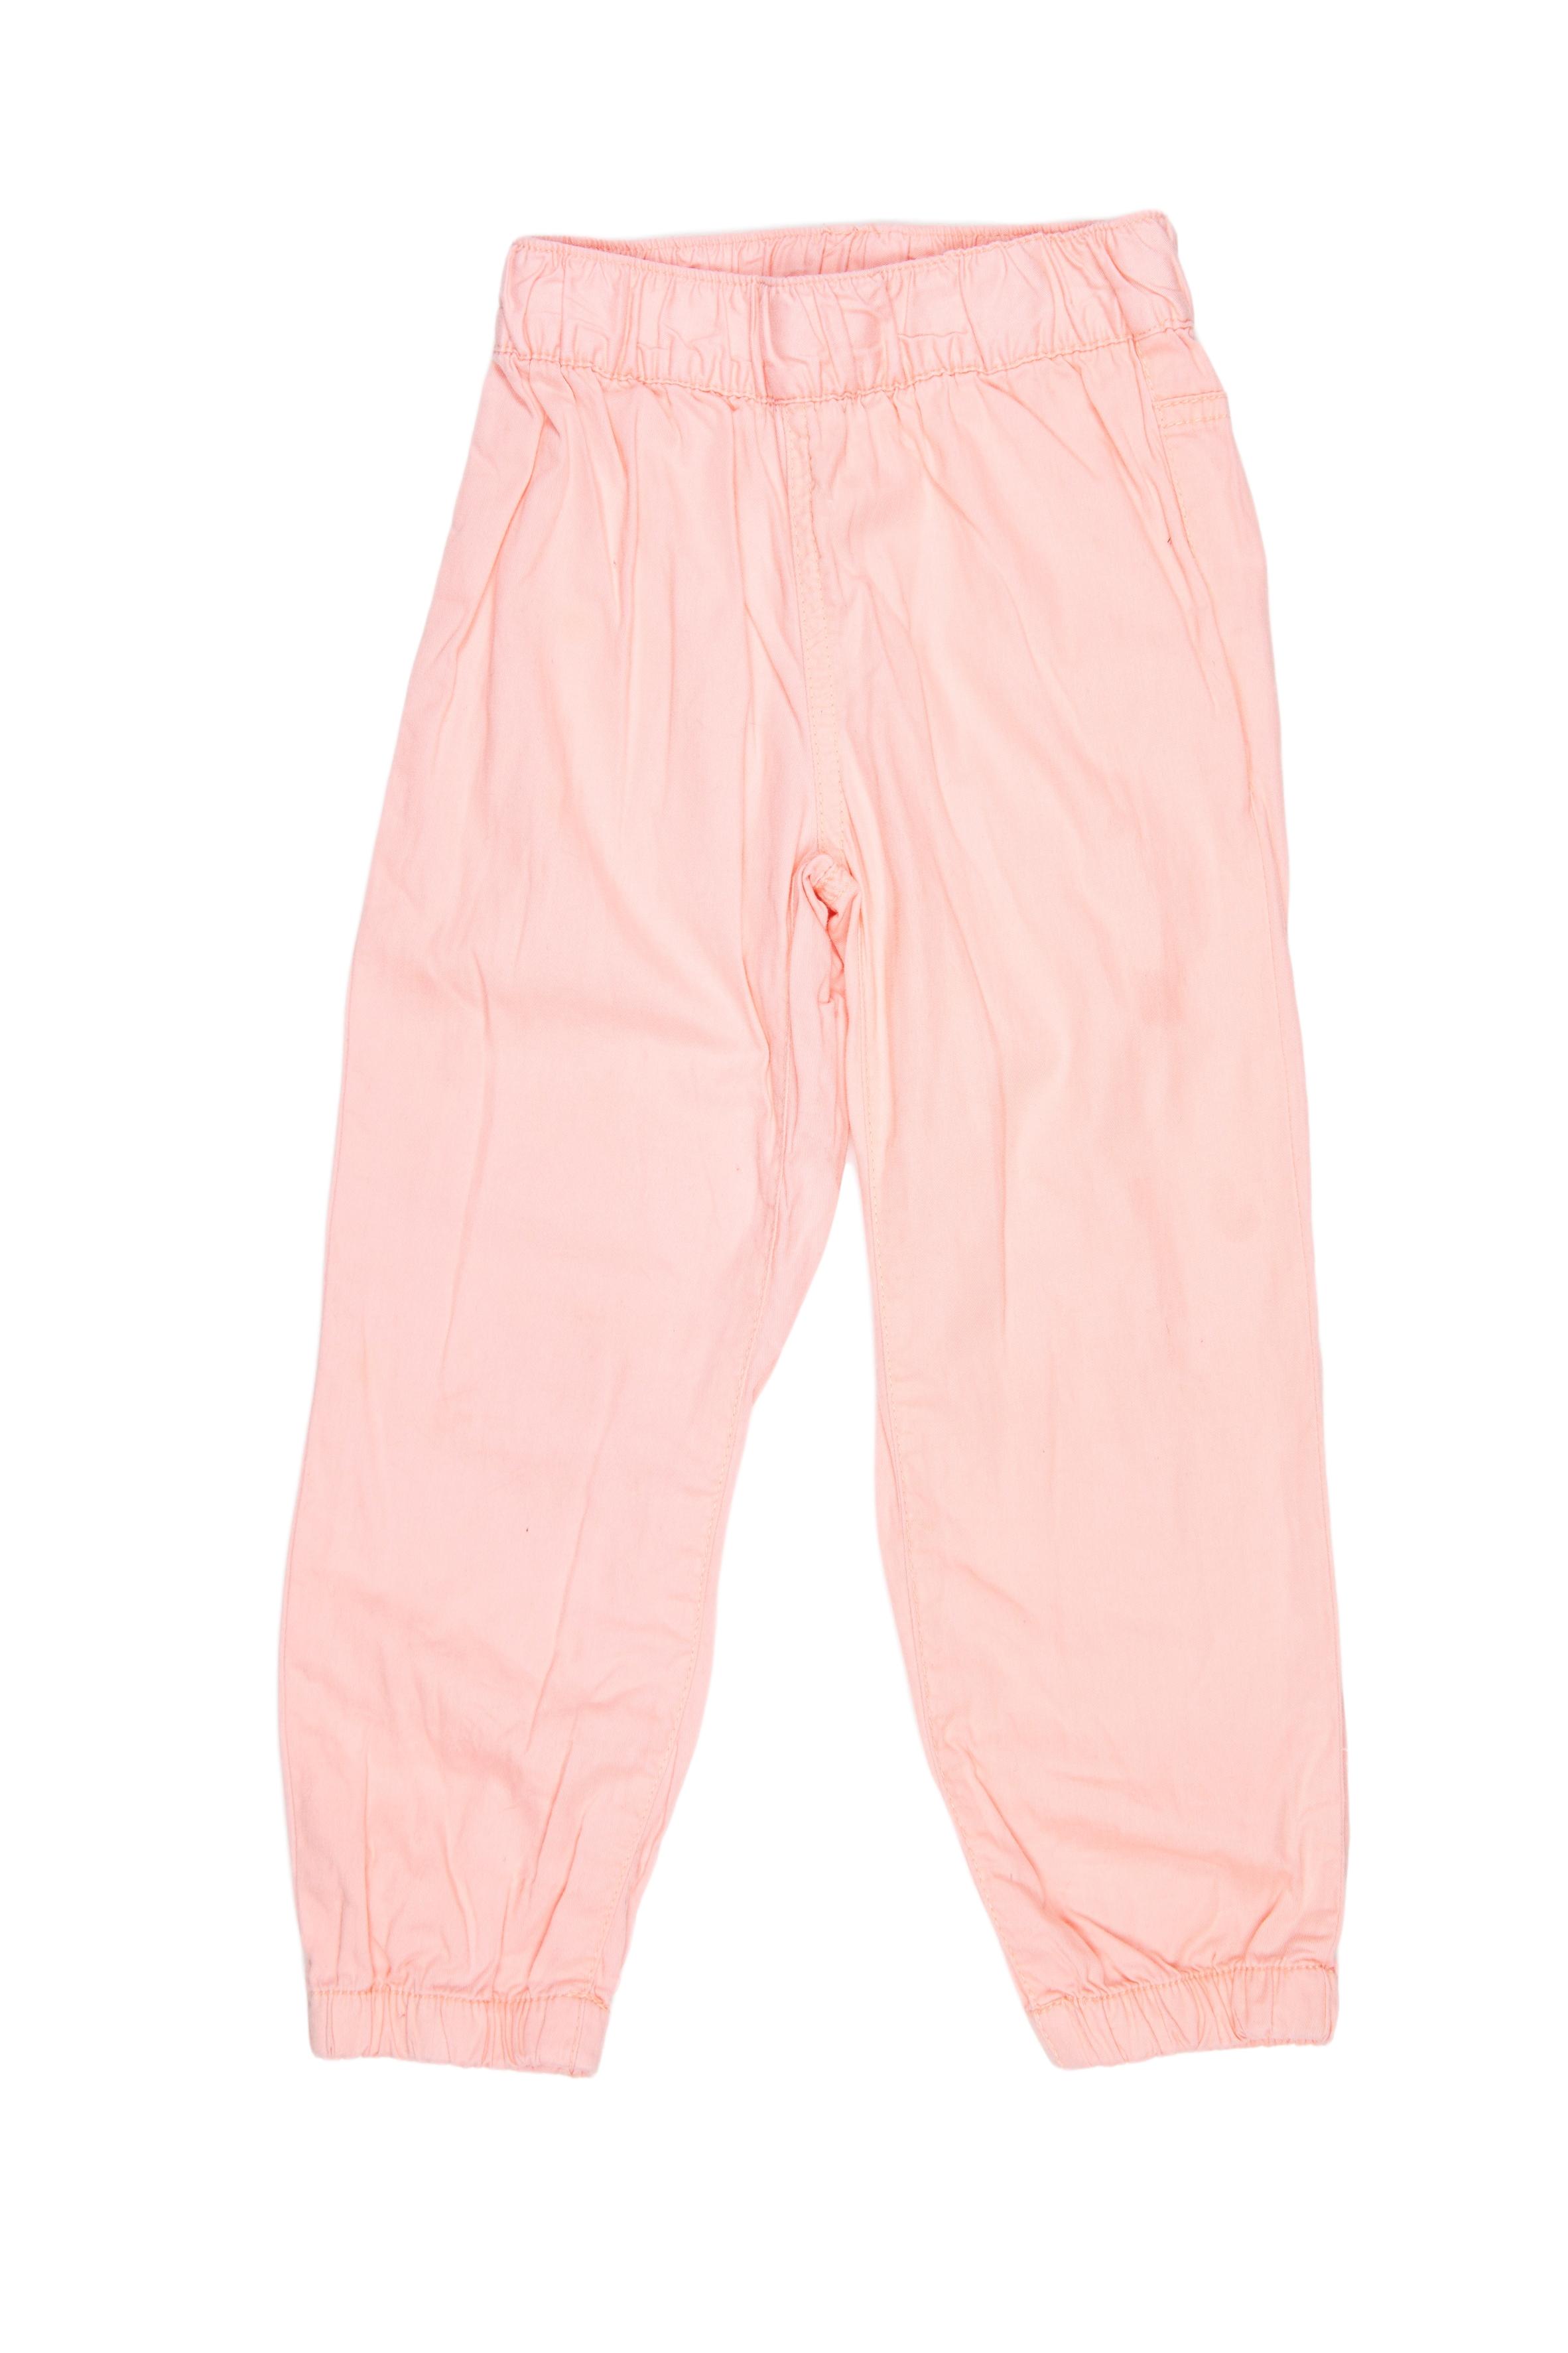 Pantalon de drill delgado color melon con elastico en cintura y tobillos. 100% algodón. Talla en etiqueta 3 - Yamp